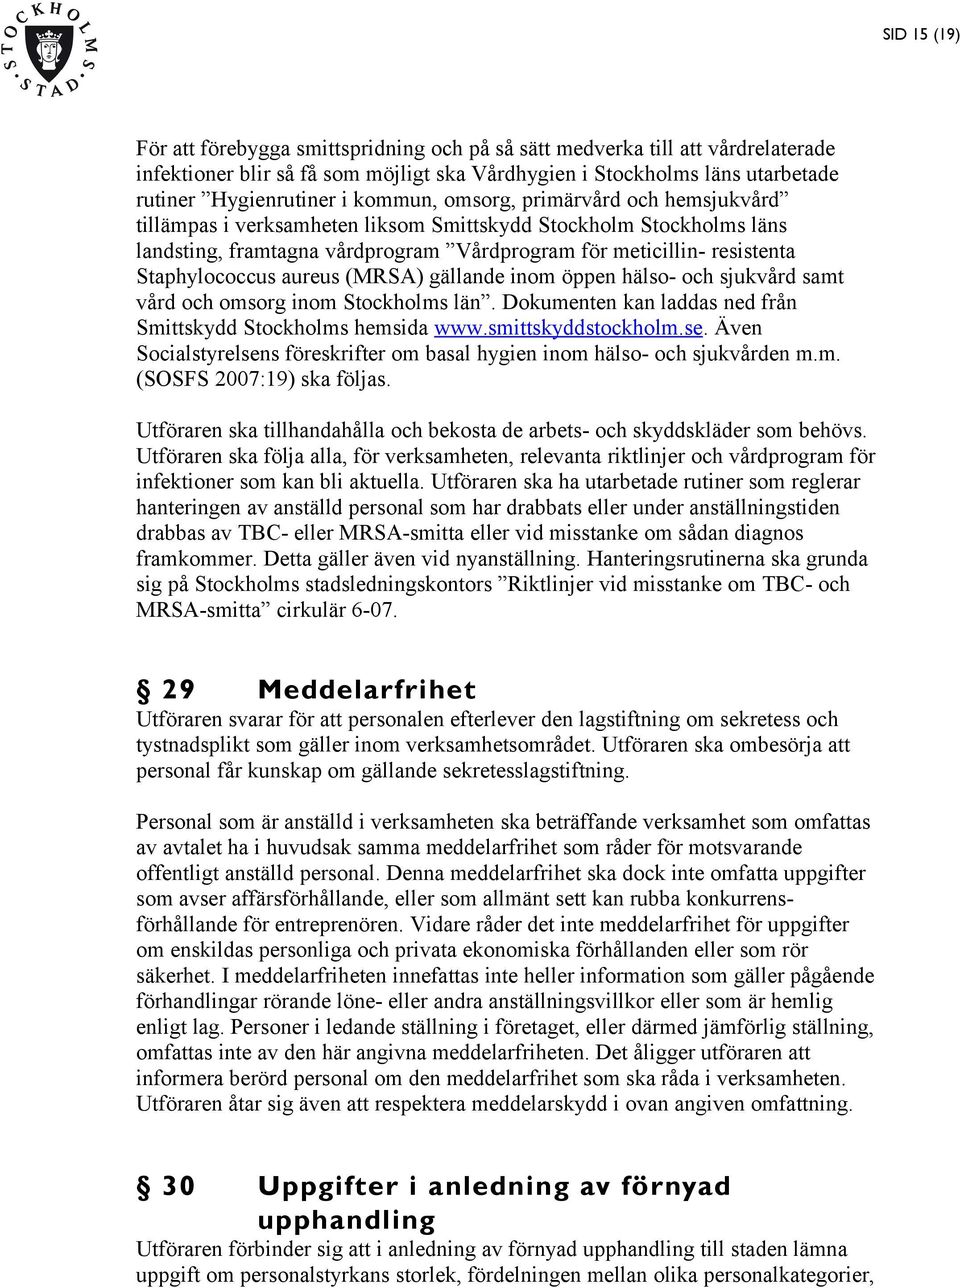 aureus (MRSA) gällande inom öppen hälso- och sjukvård samt vård och omsorg inom Stockholms län. Dokumenten kan laddas ned från Smittskydd Stockholms hemsida www.smittskyddstockholm.se.